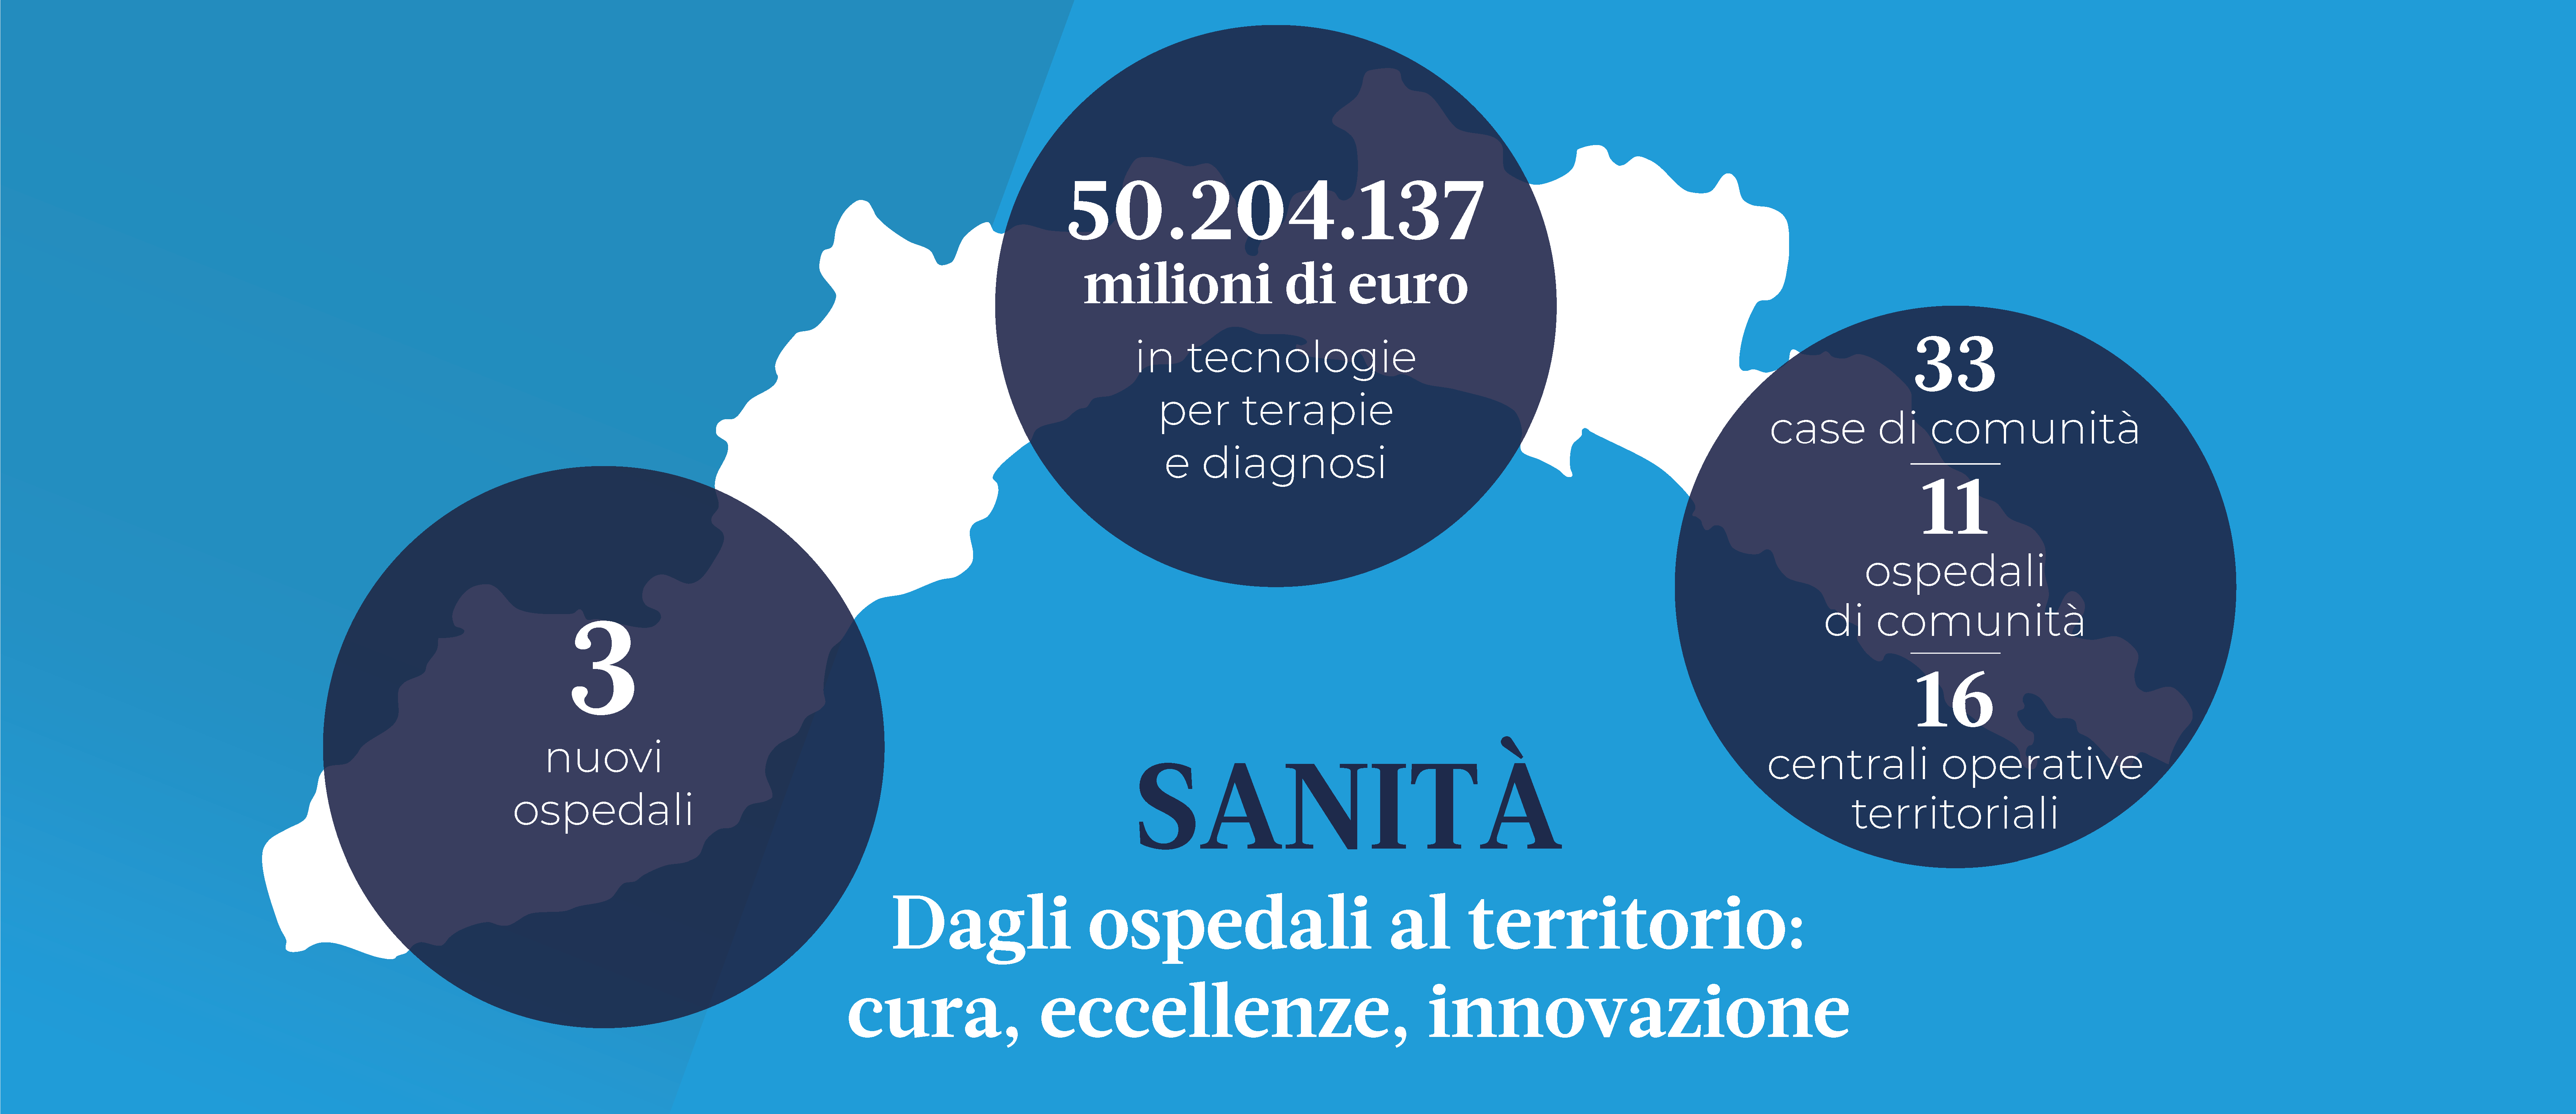 cartina della Liguria con i dati degli investiementi futuri in sanità